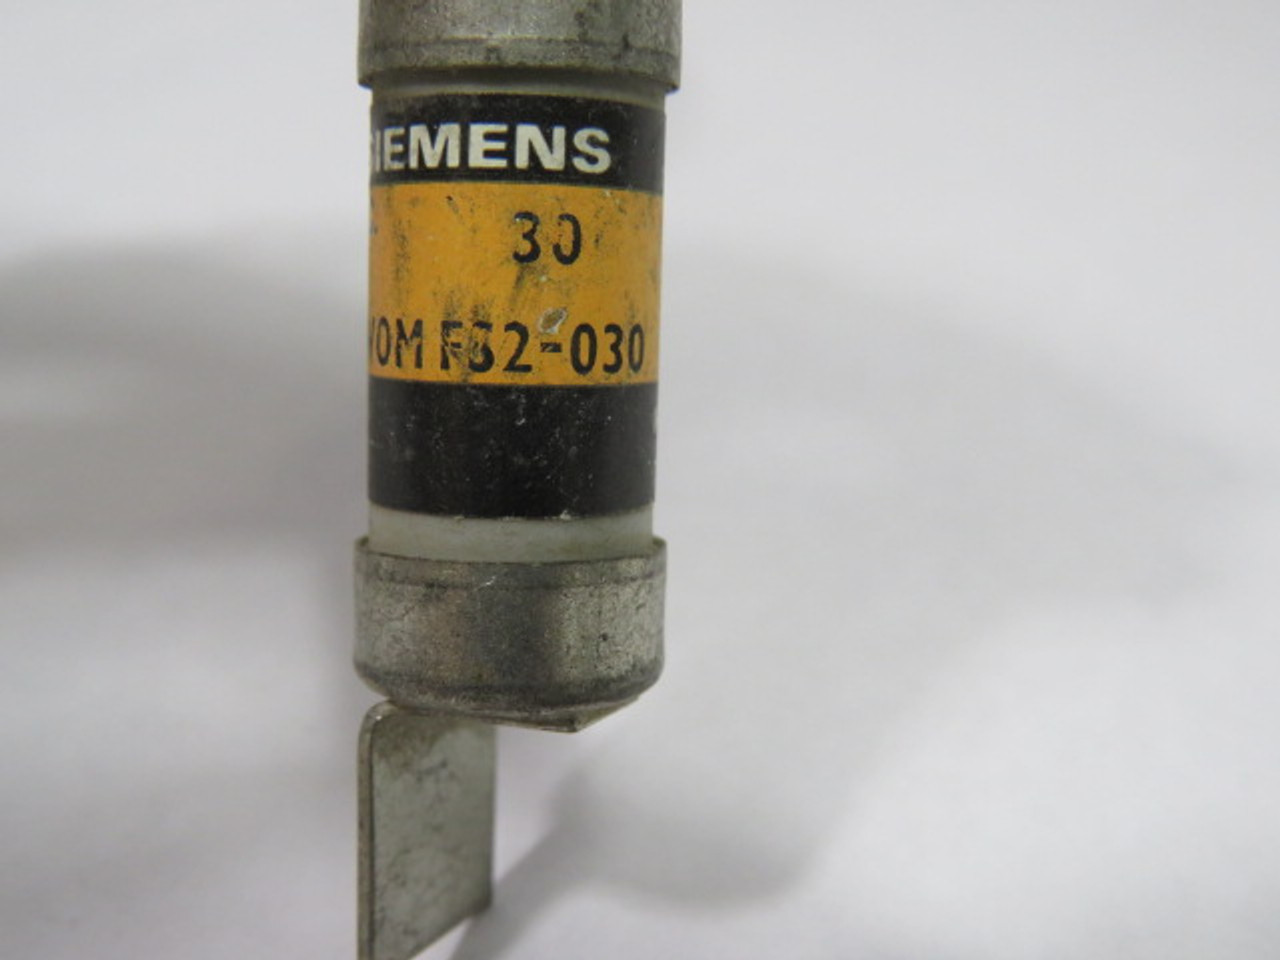 Siemens 3N-WOM-FS2-030 Fuse 30A 600V USED